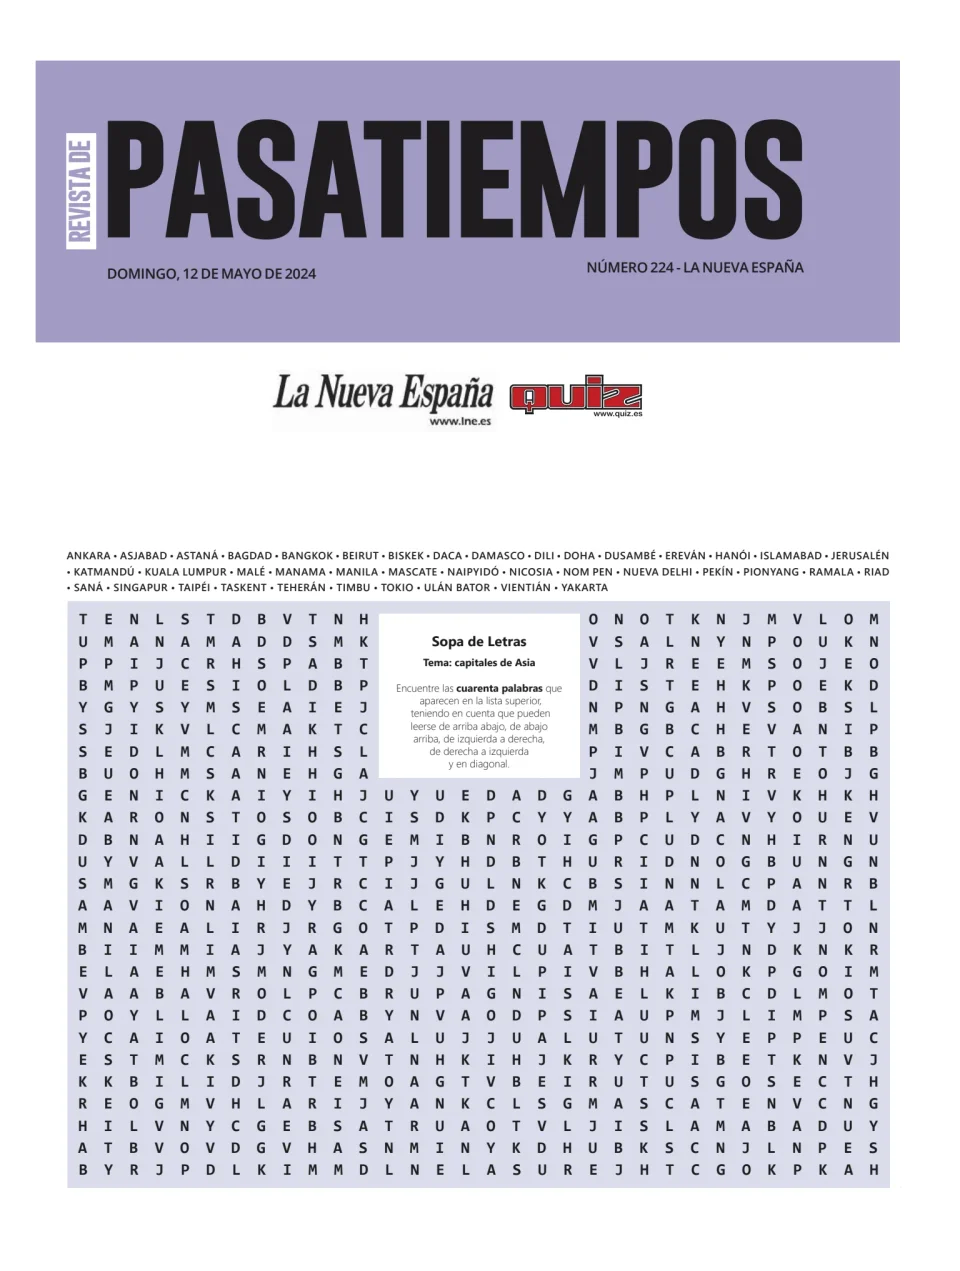 La Nueva España - Pasatiempos | La Nueva España